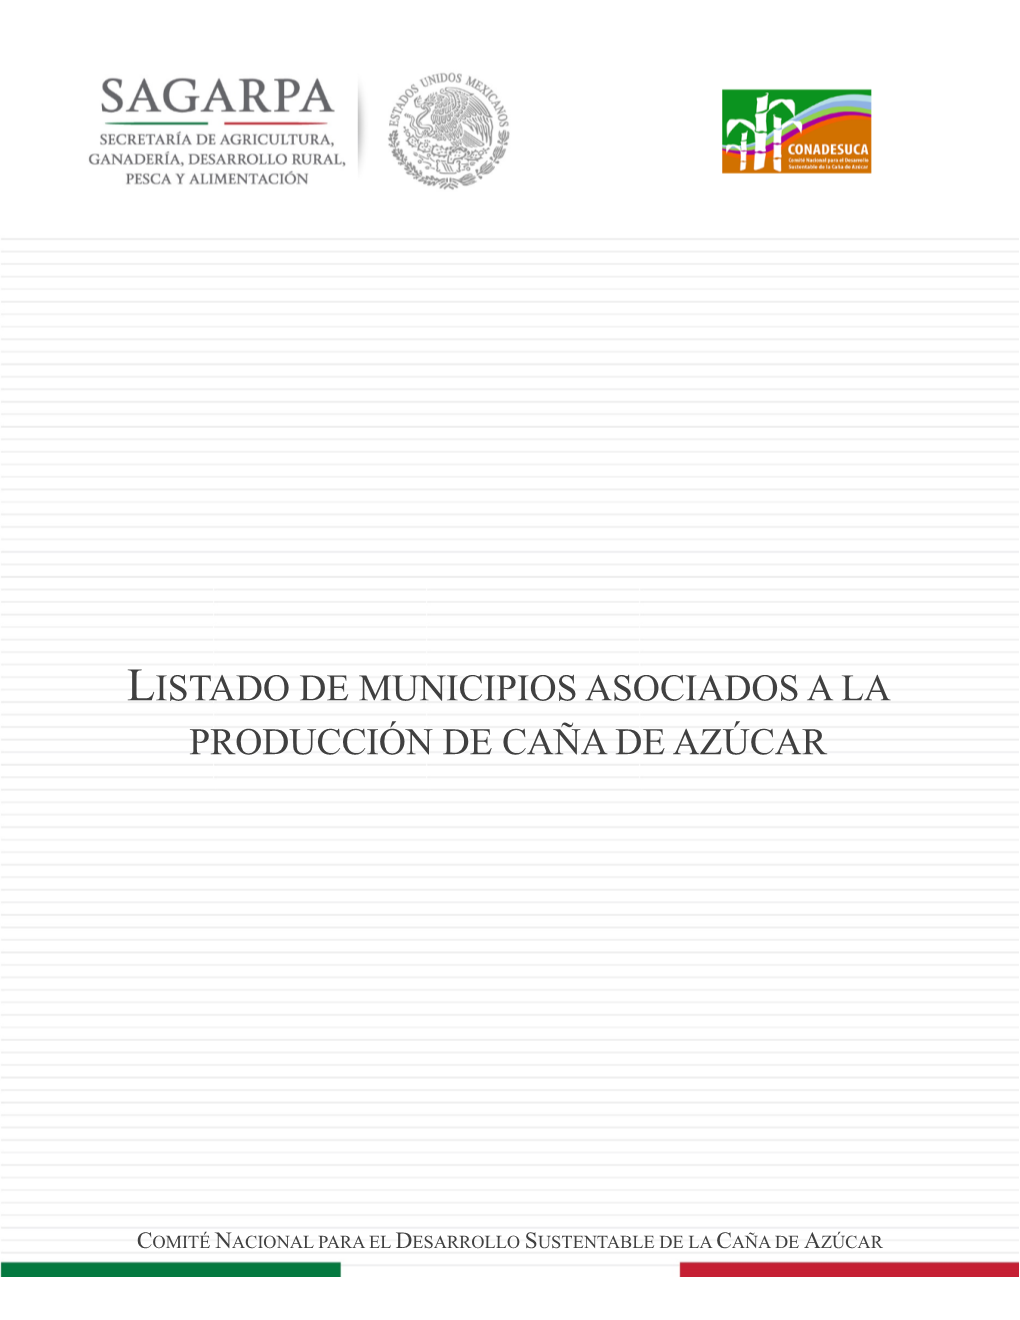 Listado De Municipios Asociados a La Producción De Caña De Azúcar